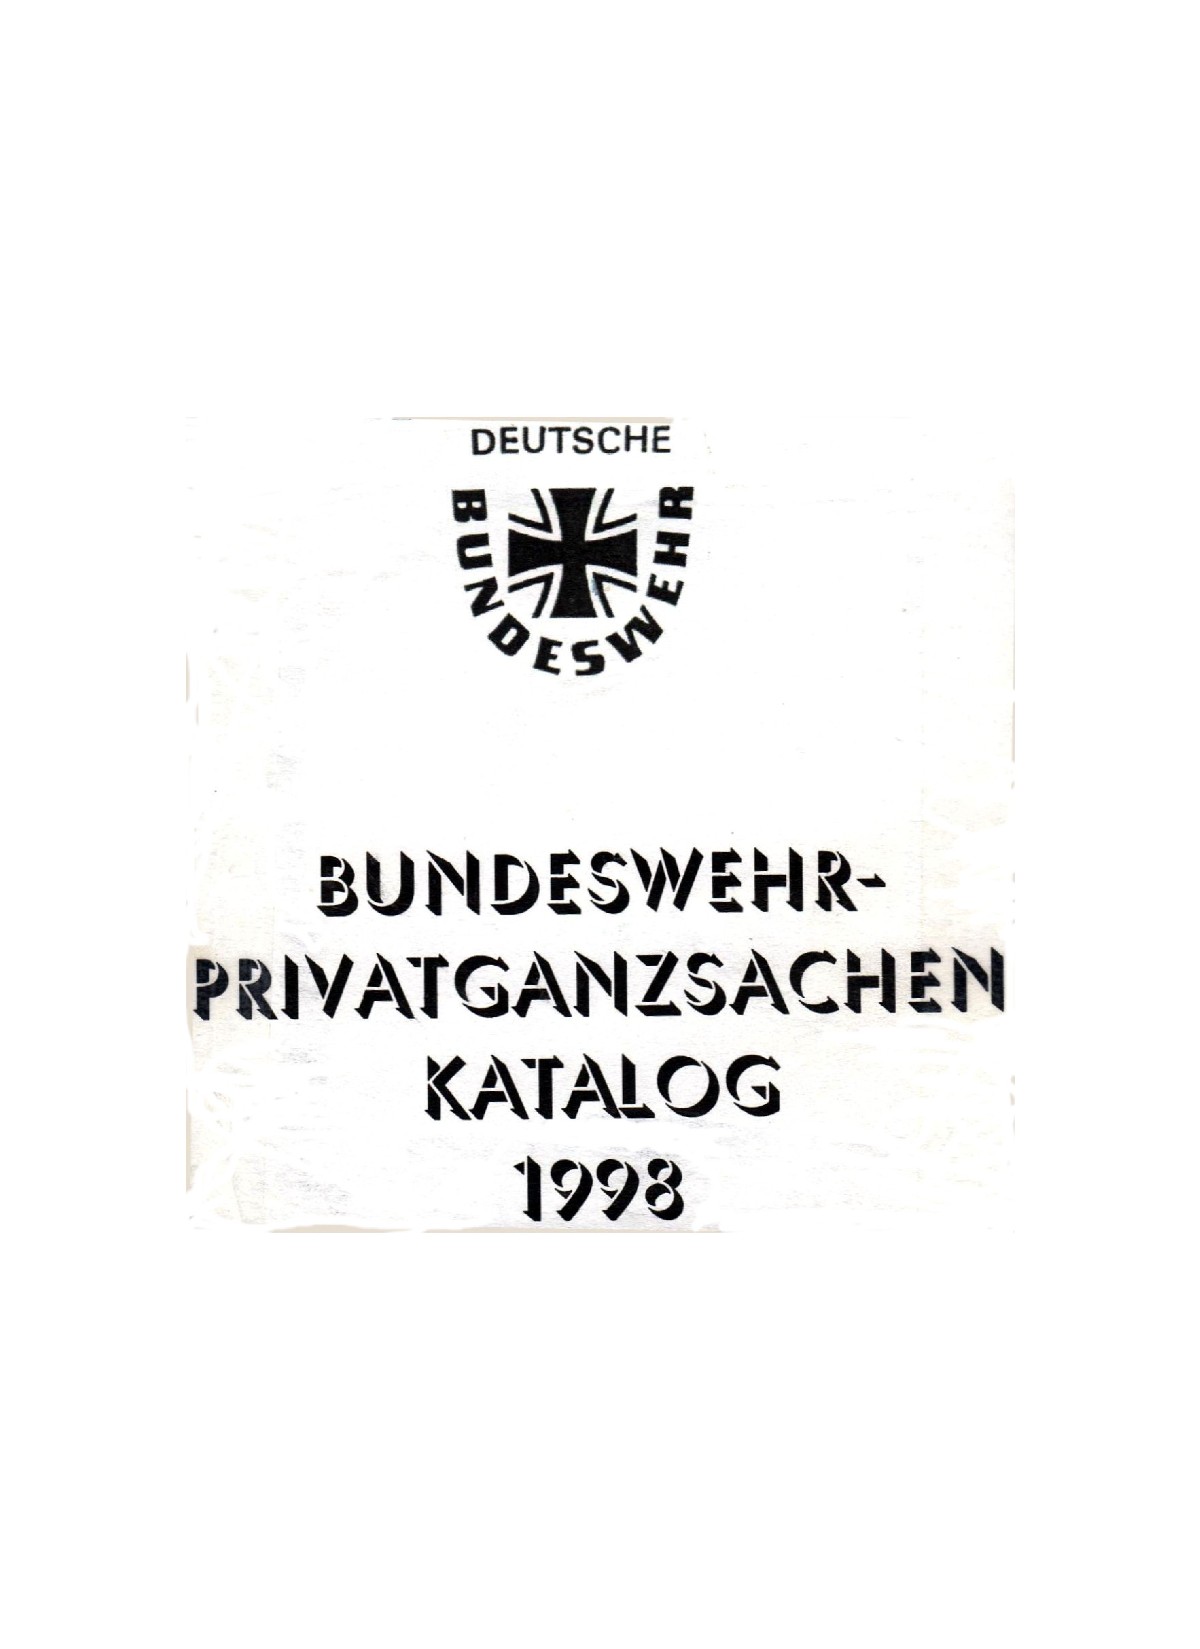 Bundeswehr Ganzsachen Ktalog 1998